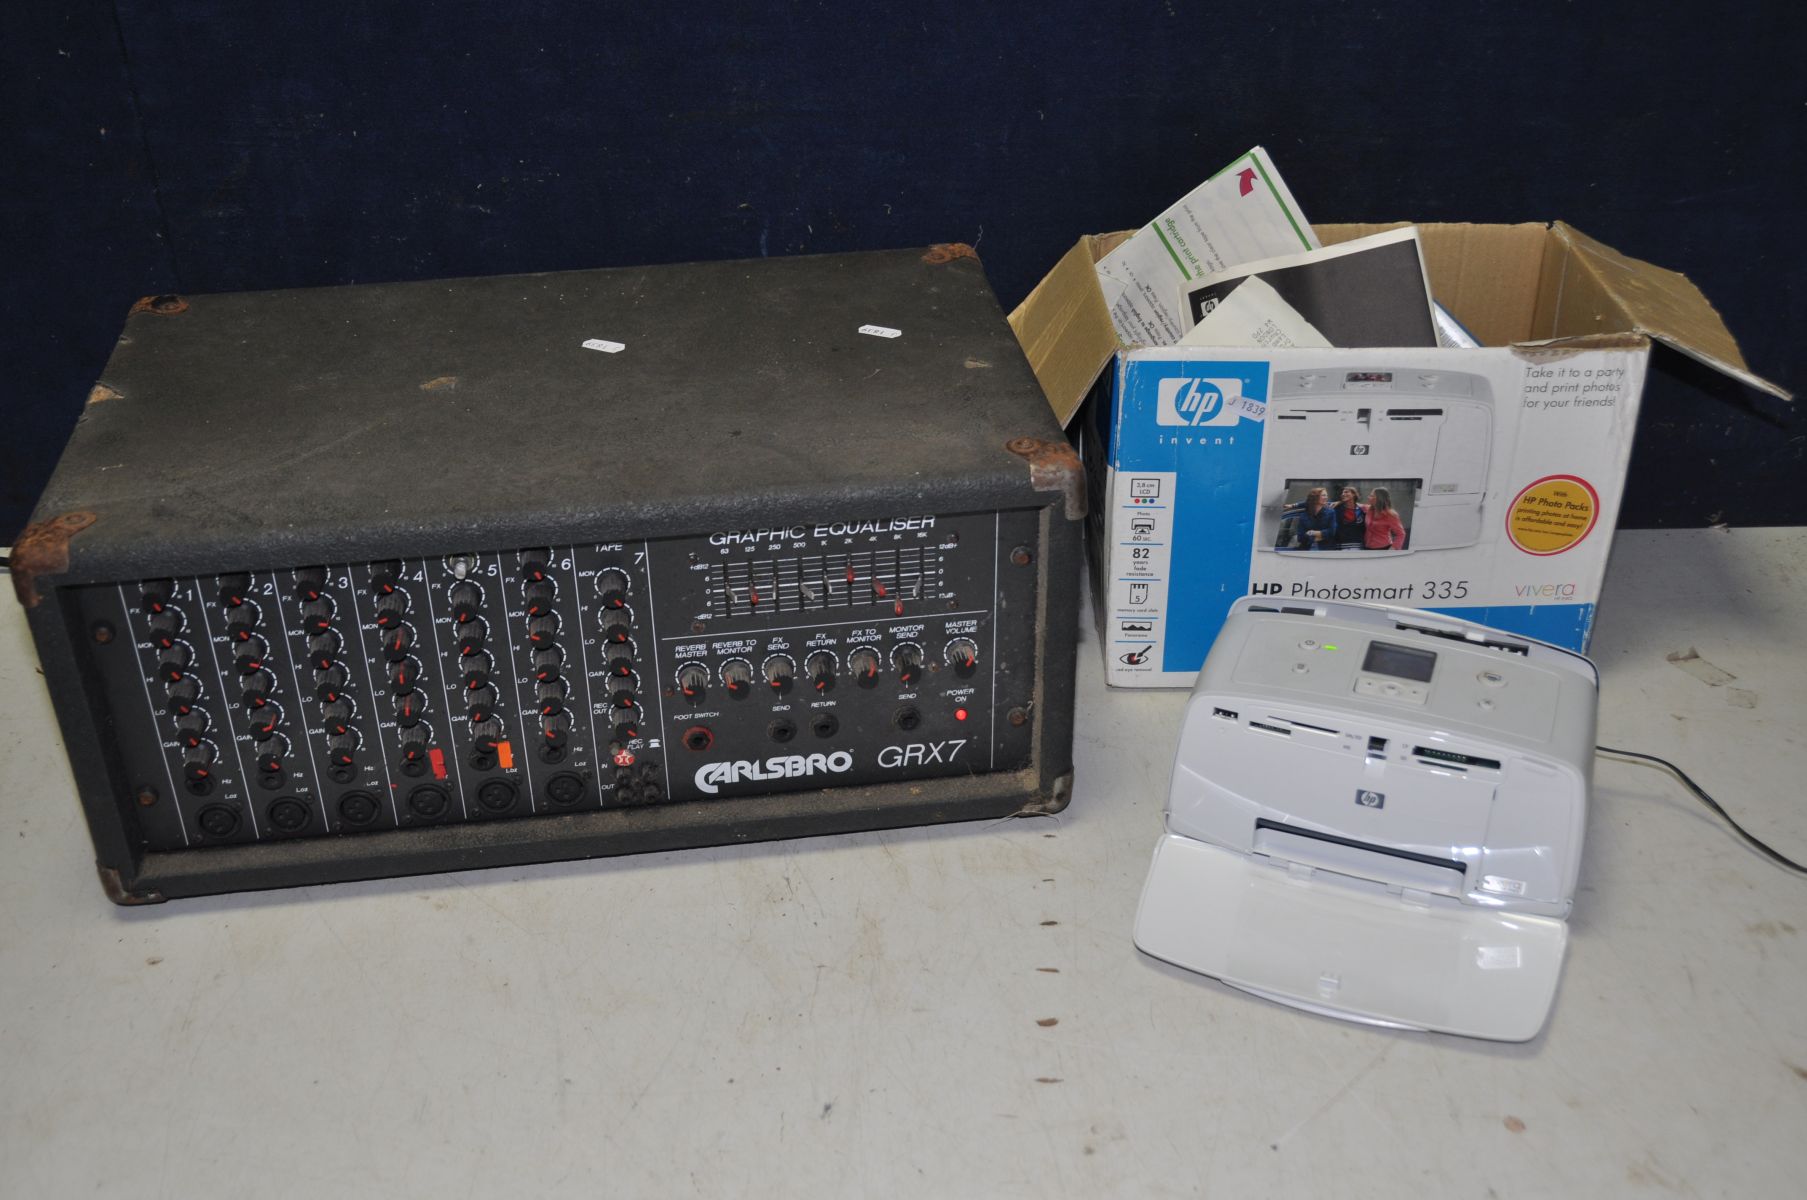 A HP INVENT PHOTOSMART 335 PRINTER model No Q6377L and a Carlsbro amplifier model No GRX7 (both